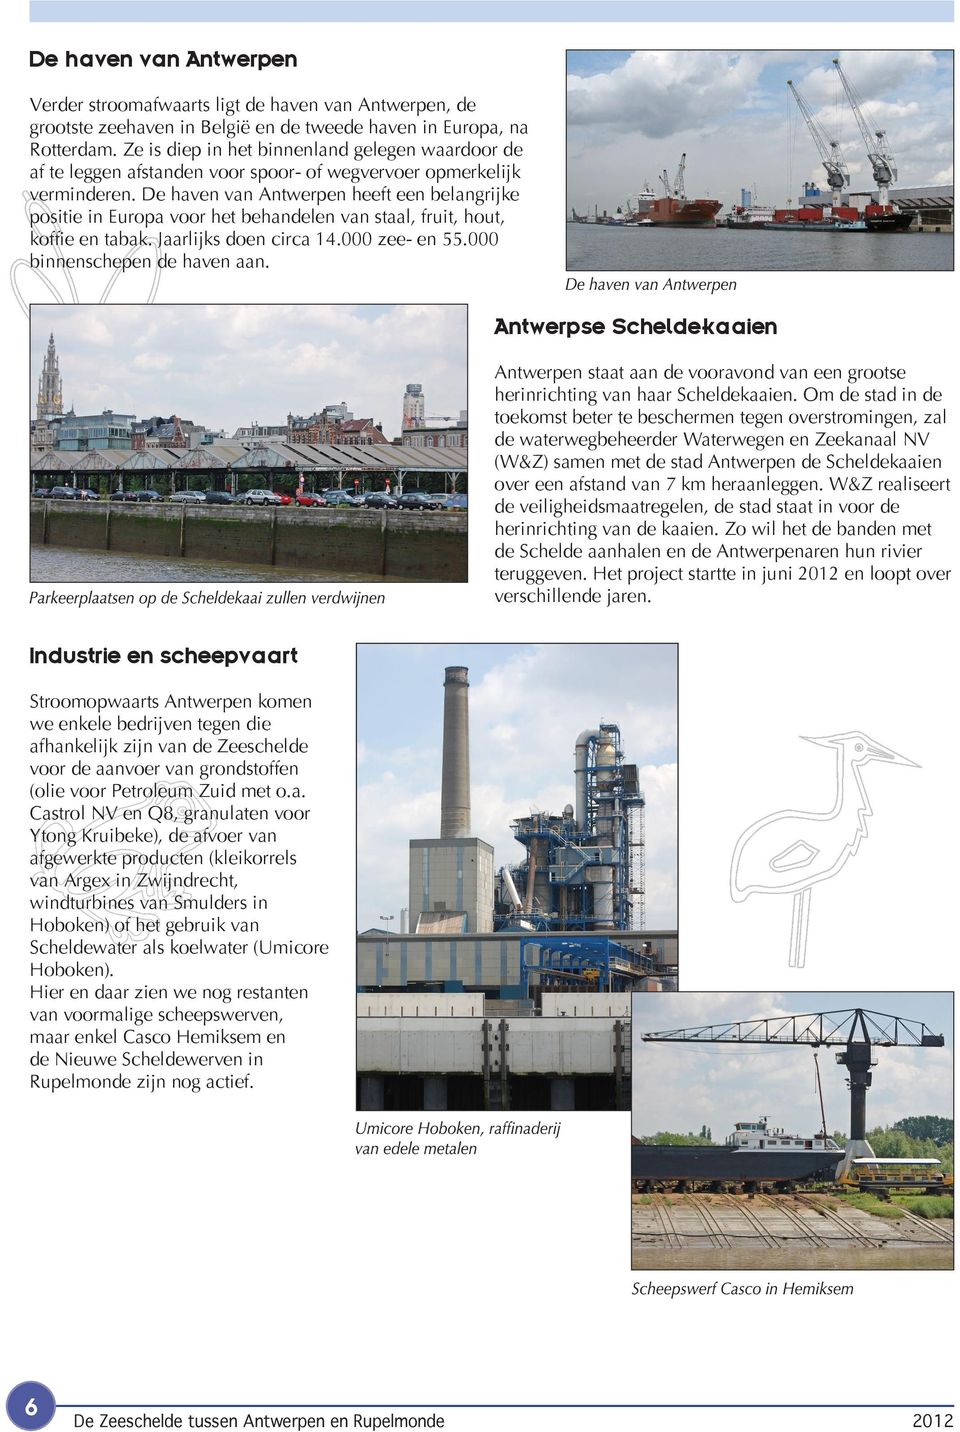 De haven van Antwerpen heeft een belangrijke positie in Europa voor het behandelen van staal, fruit, hout, koffie en tabak. Jaarlijks doen circa 14.000 zee- en 55.000 binnenschepen de haven aan.